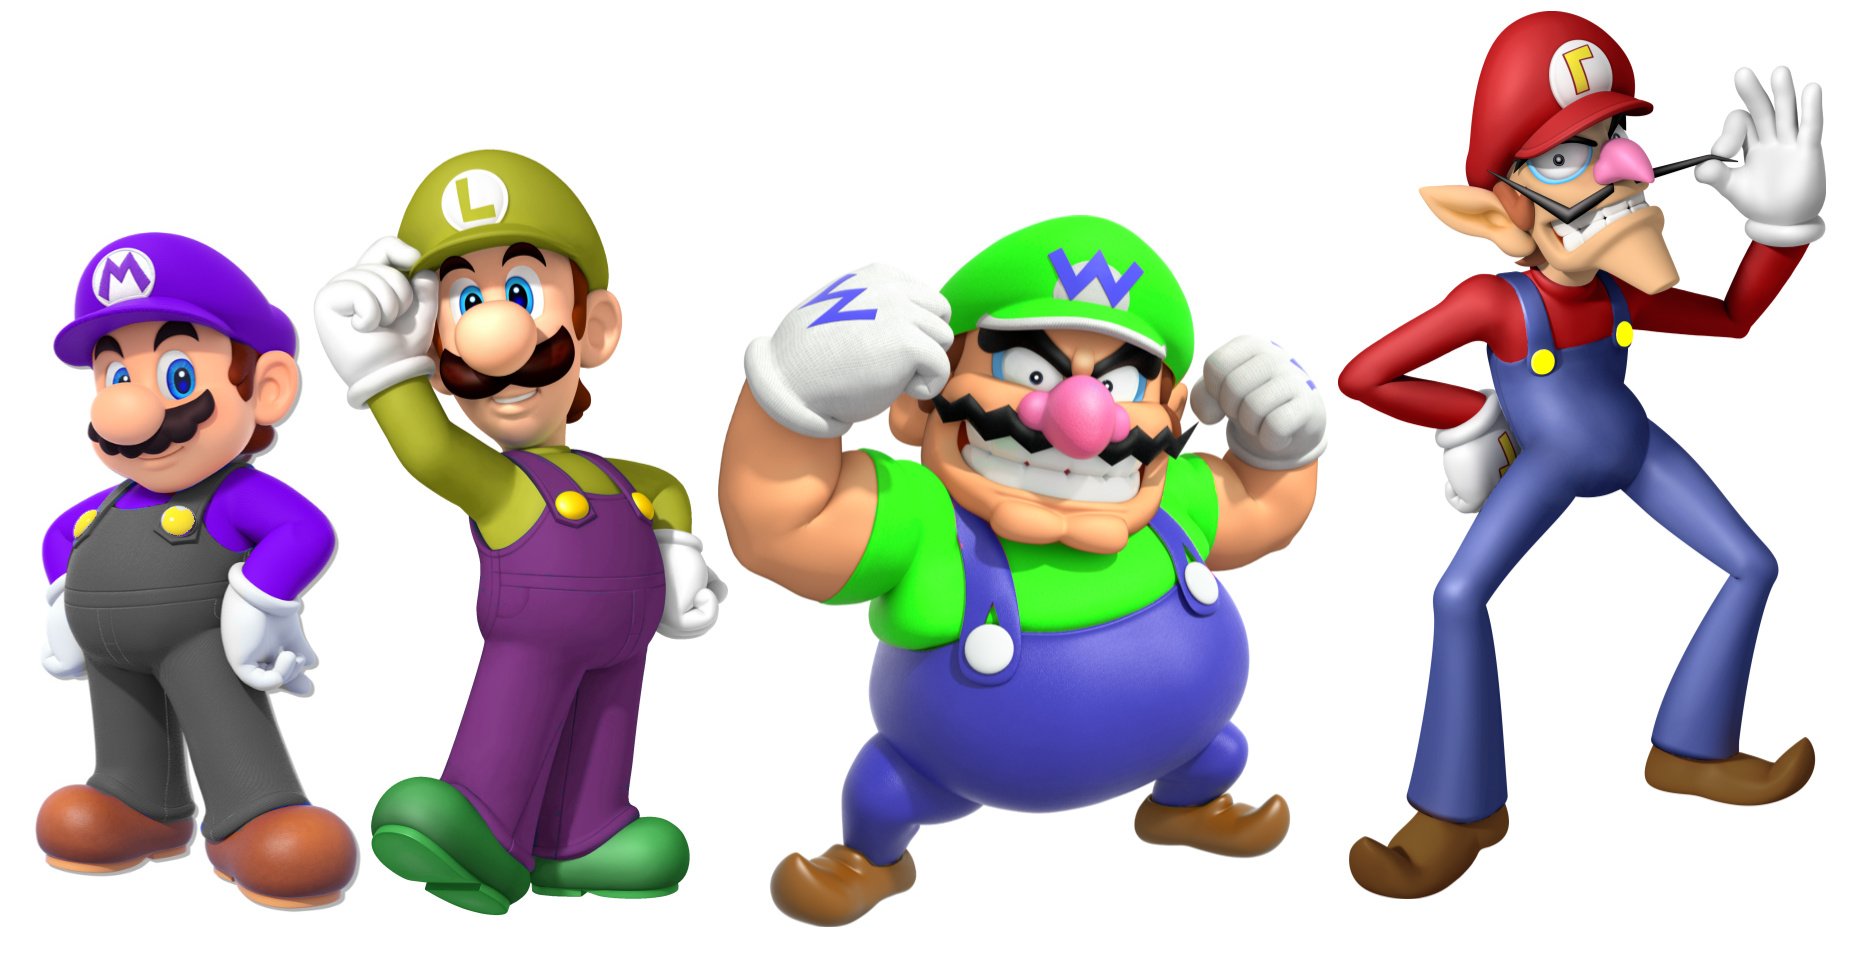 â€œ#Mario #Luigi #Wario #Waluigi 
Hmm...â€� 